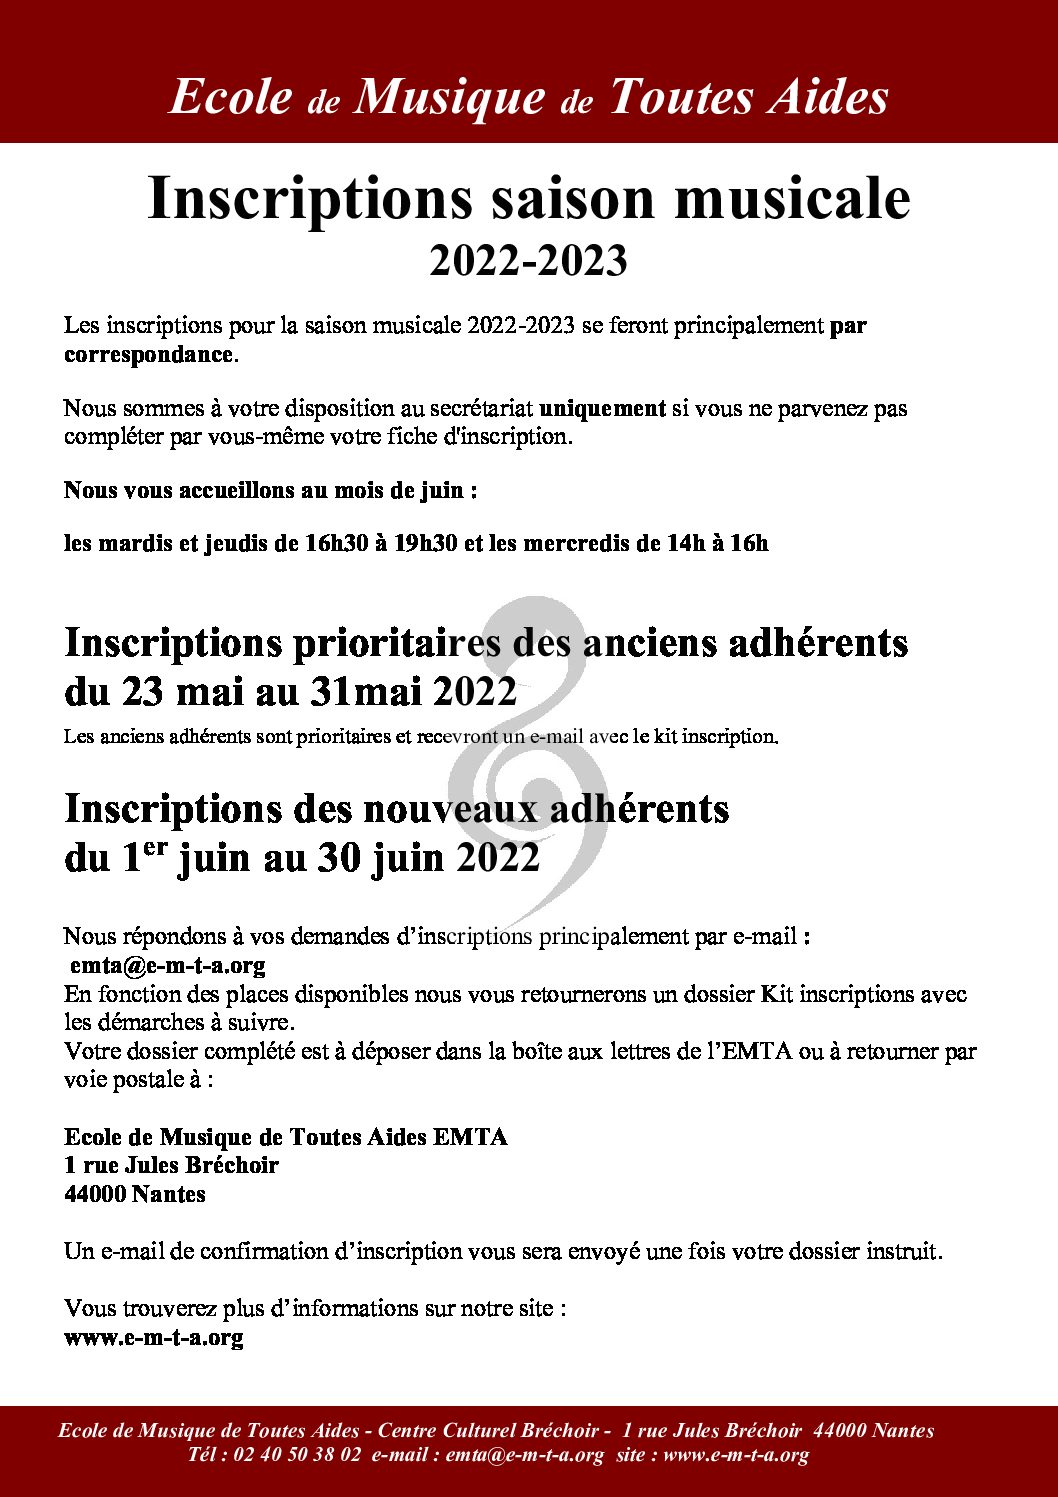 Inscriptions saison musicale 2022-2023